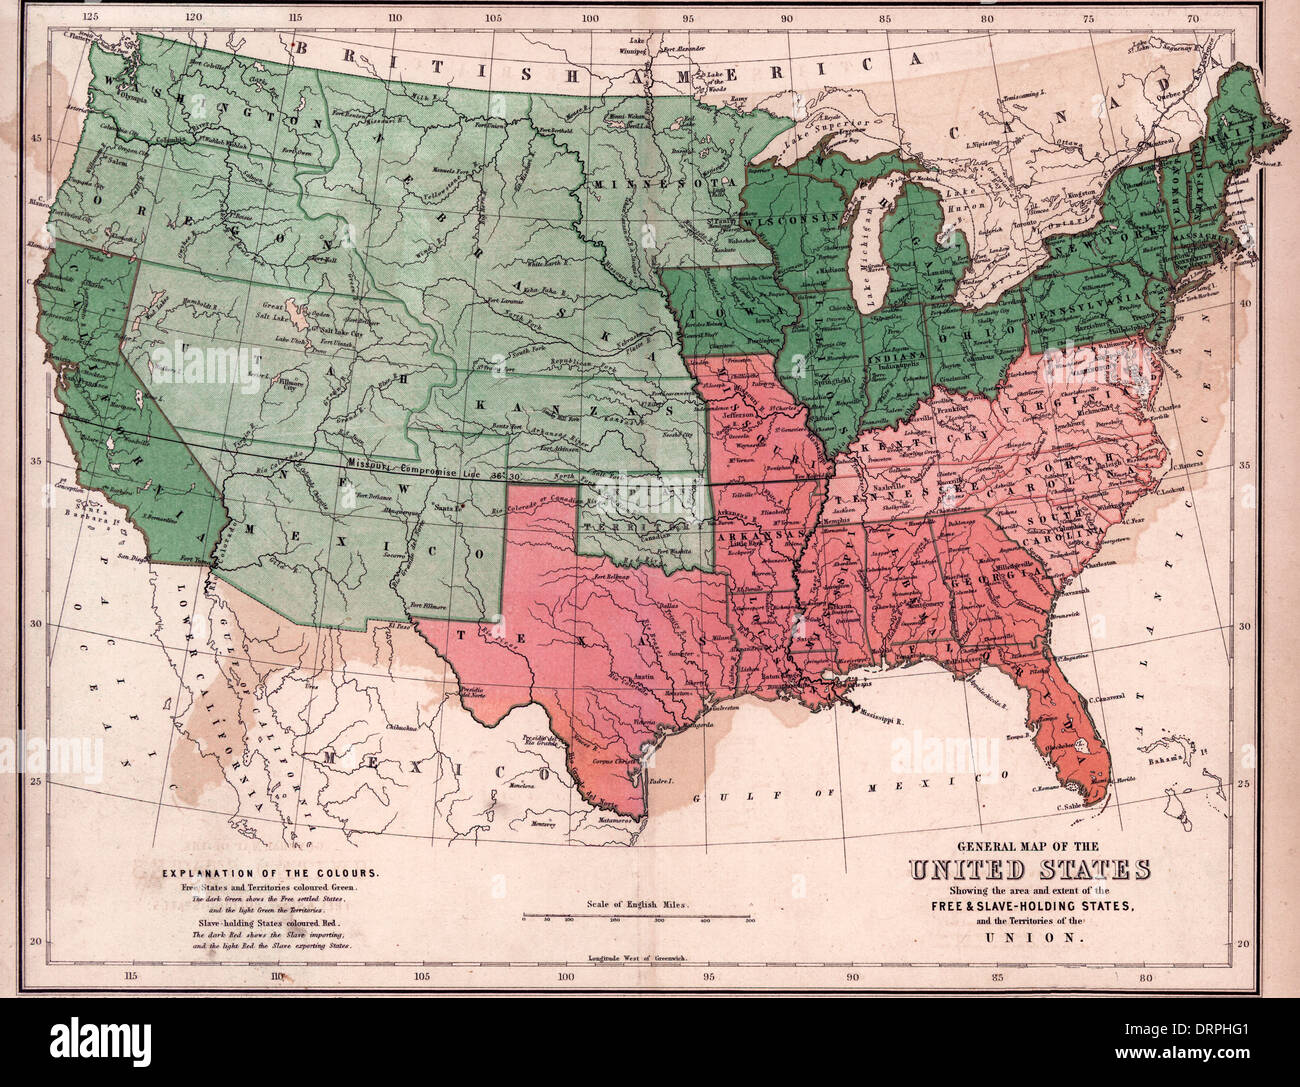 Übersichtskarte der Vereinigten Staaten, zeigt Bereich und Umfang der freien & sklavenhaltenden Staaten und Territorien der Union / 1857 Stockfoto